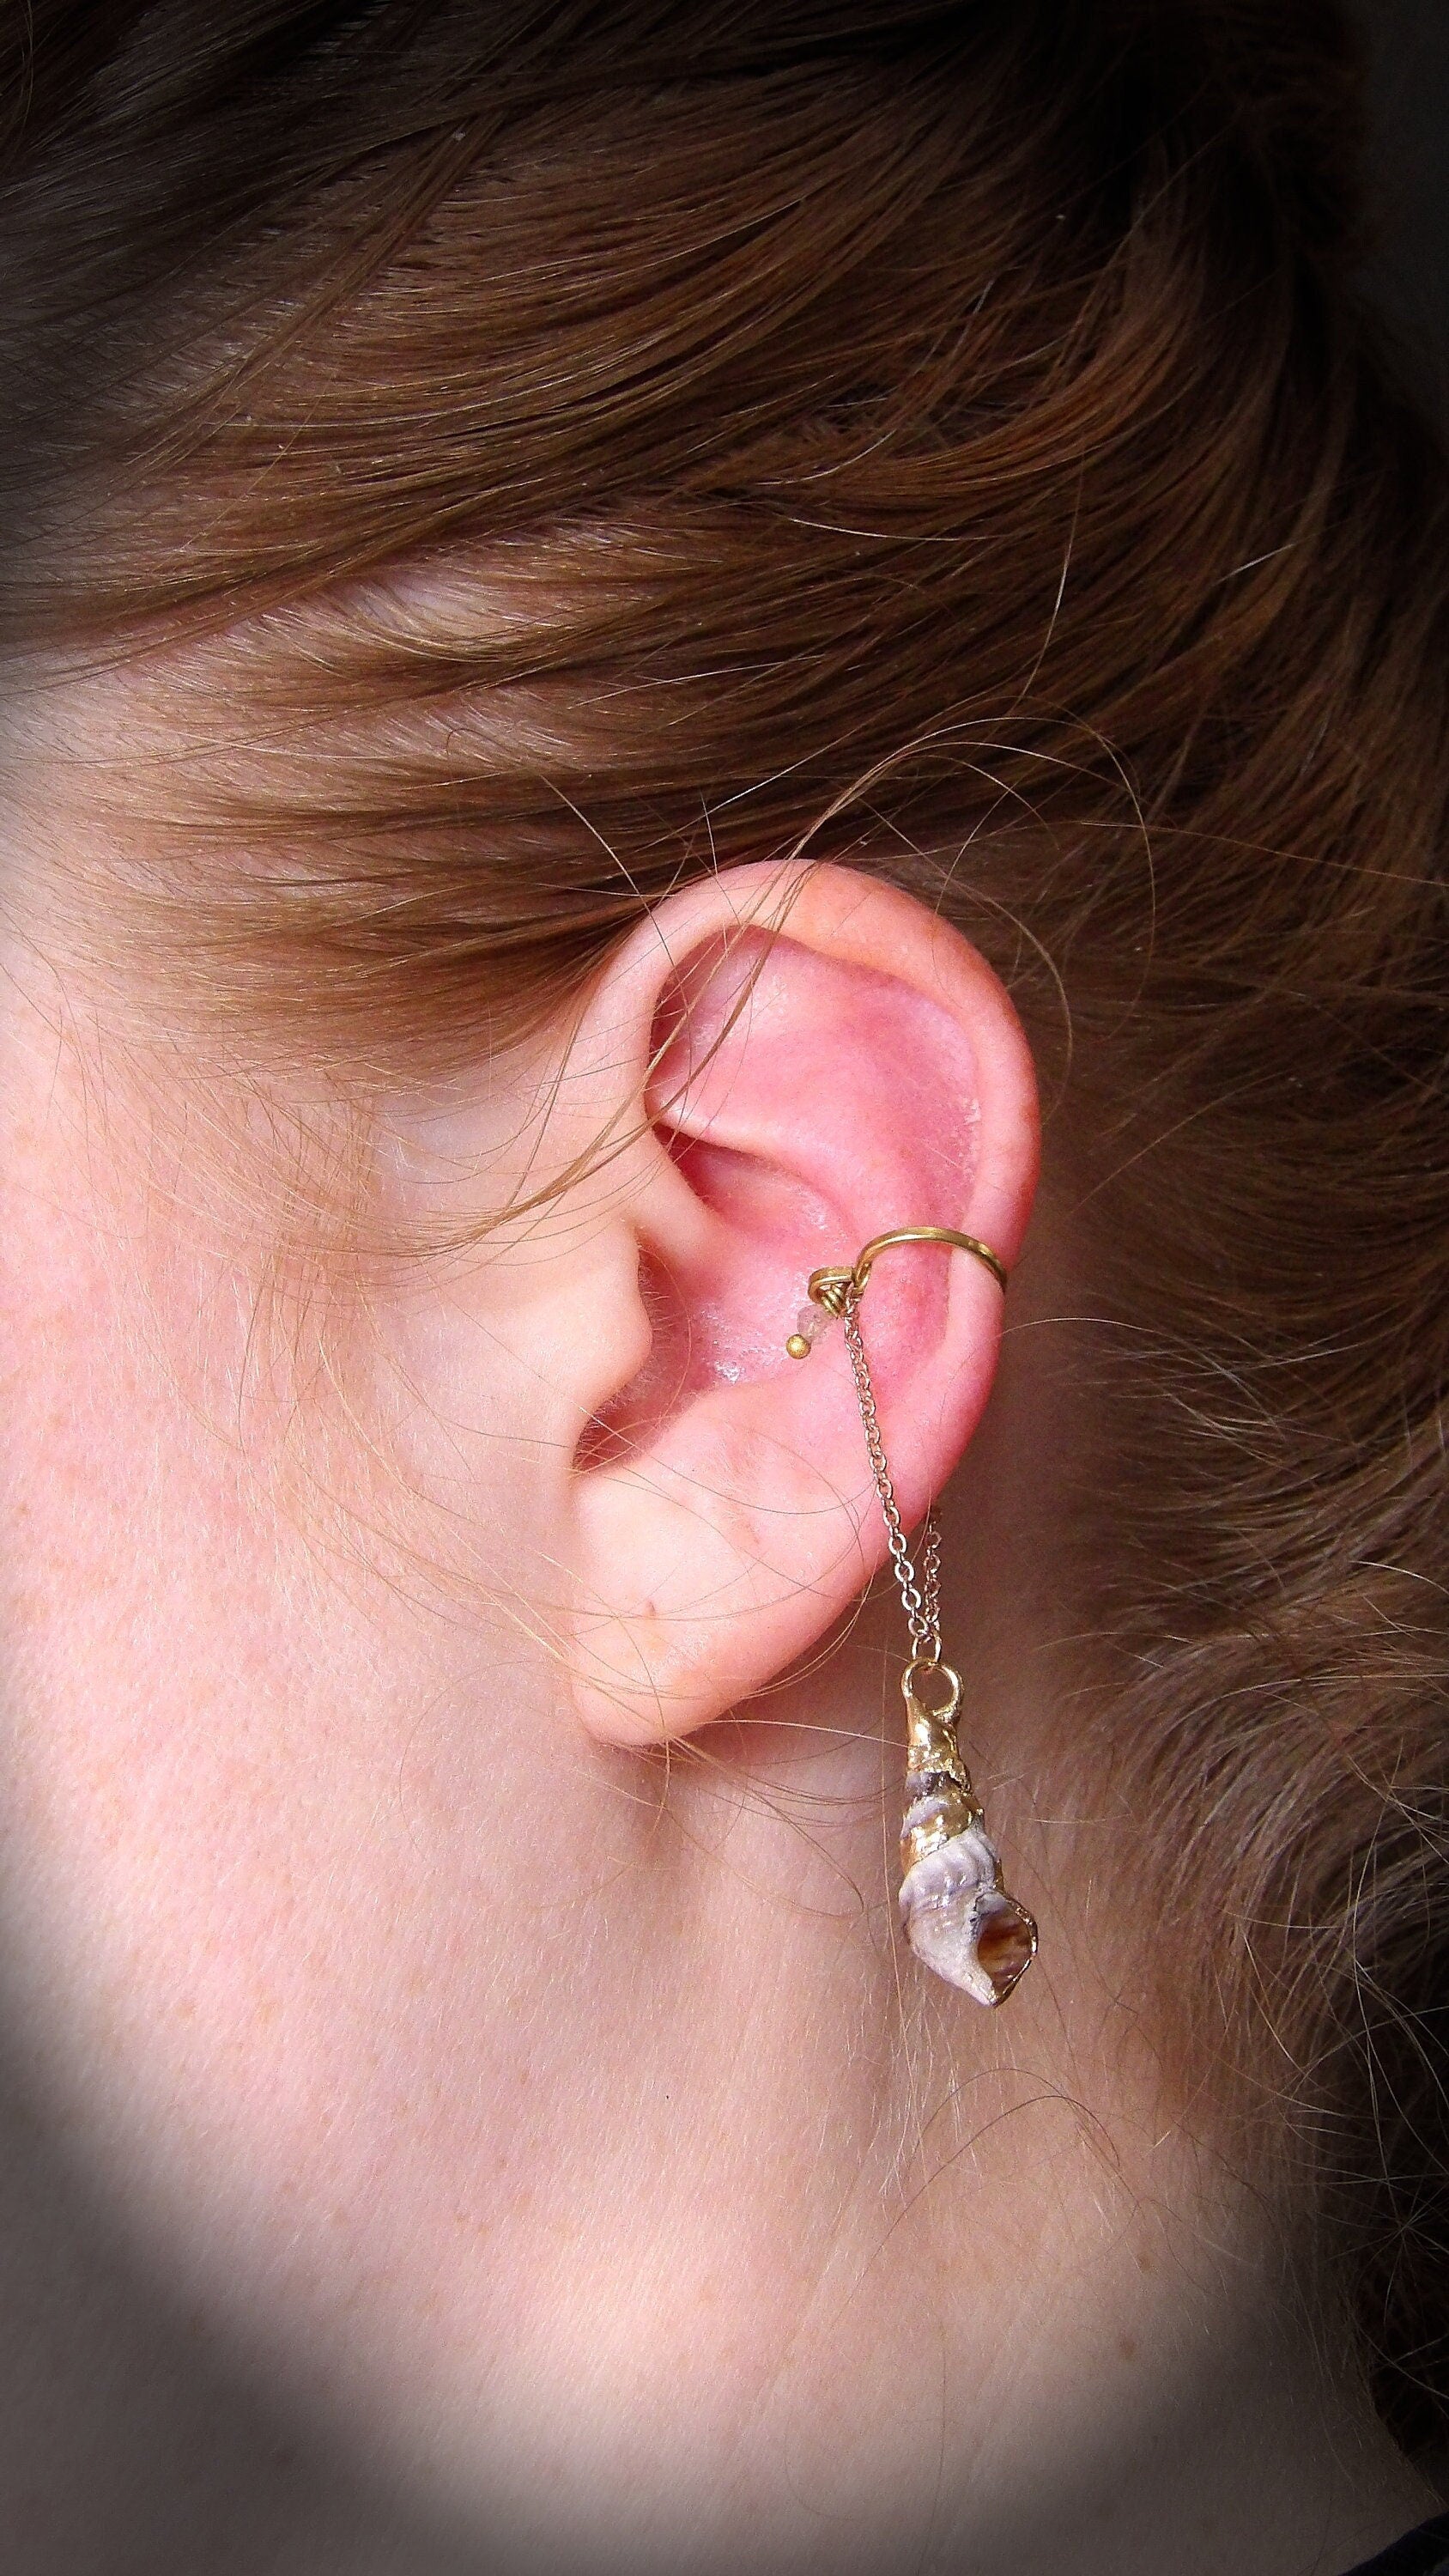 Ear cuff no piercing with seashell charm